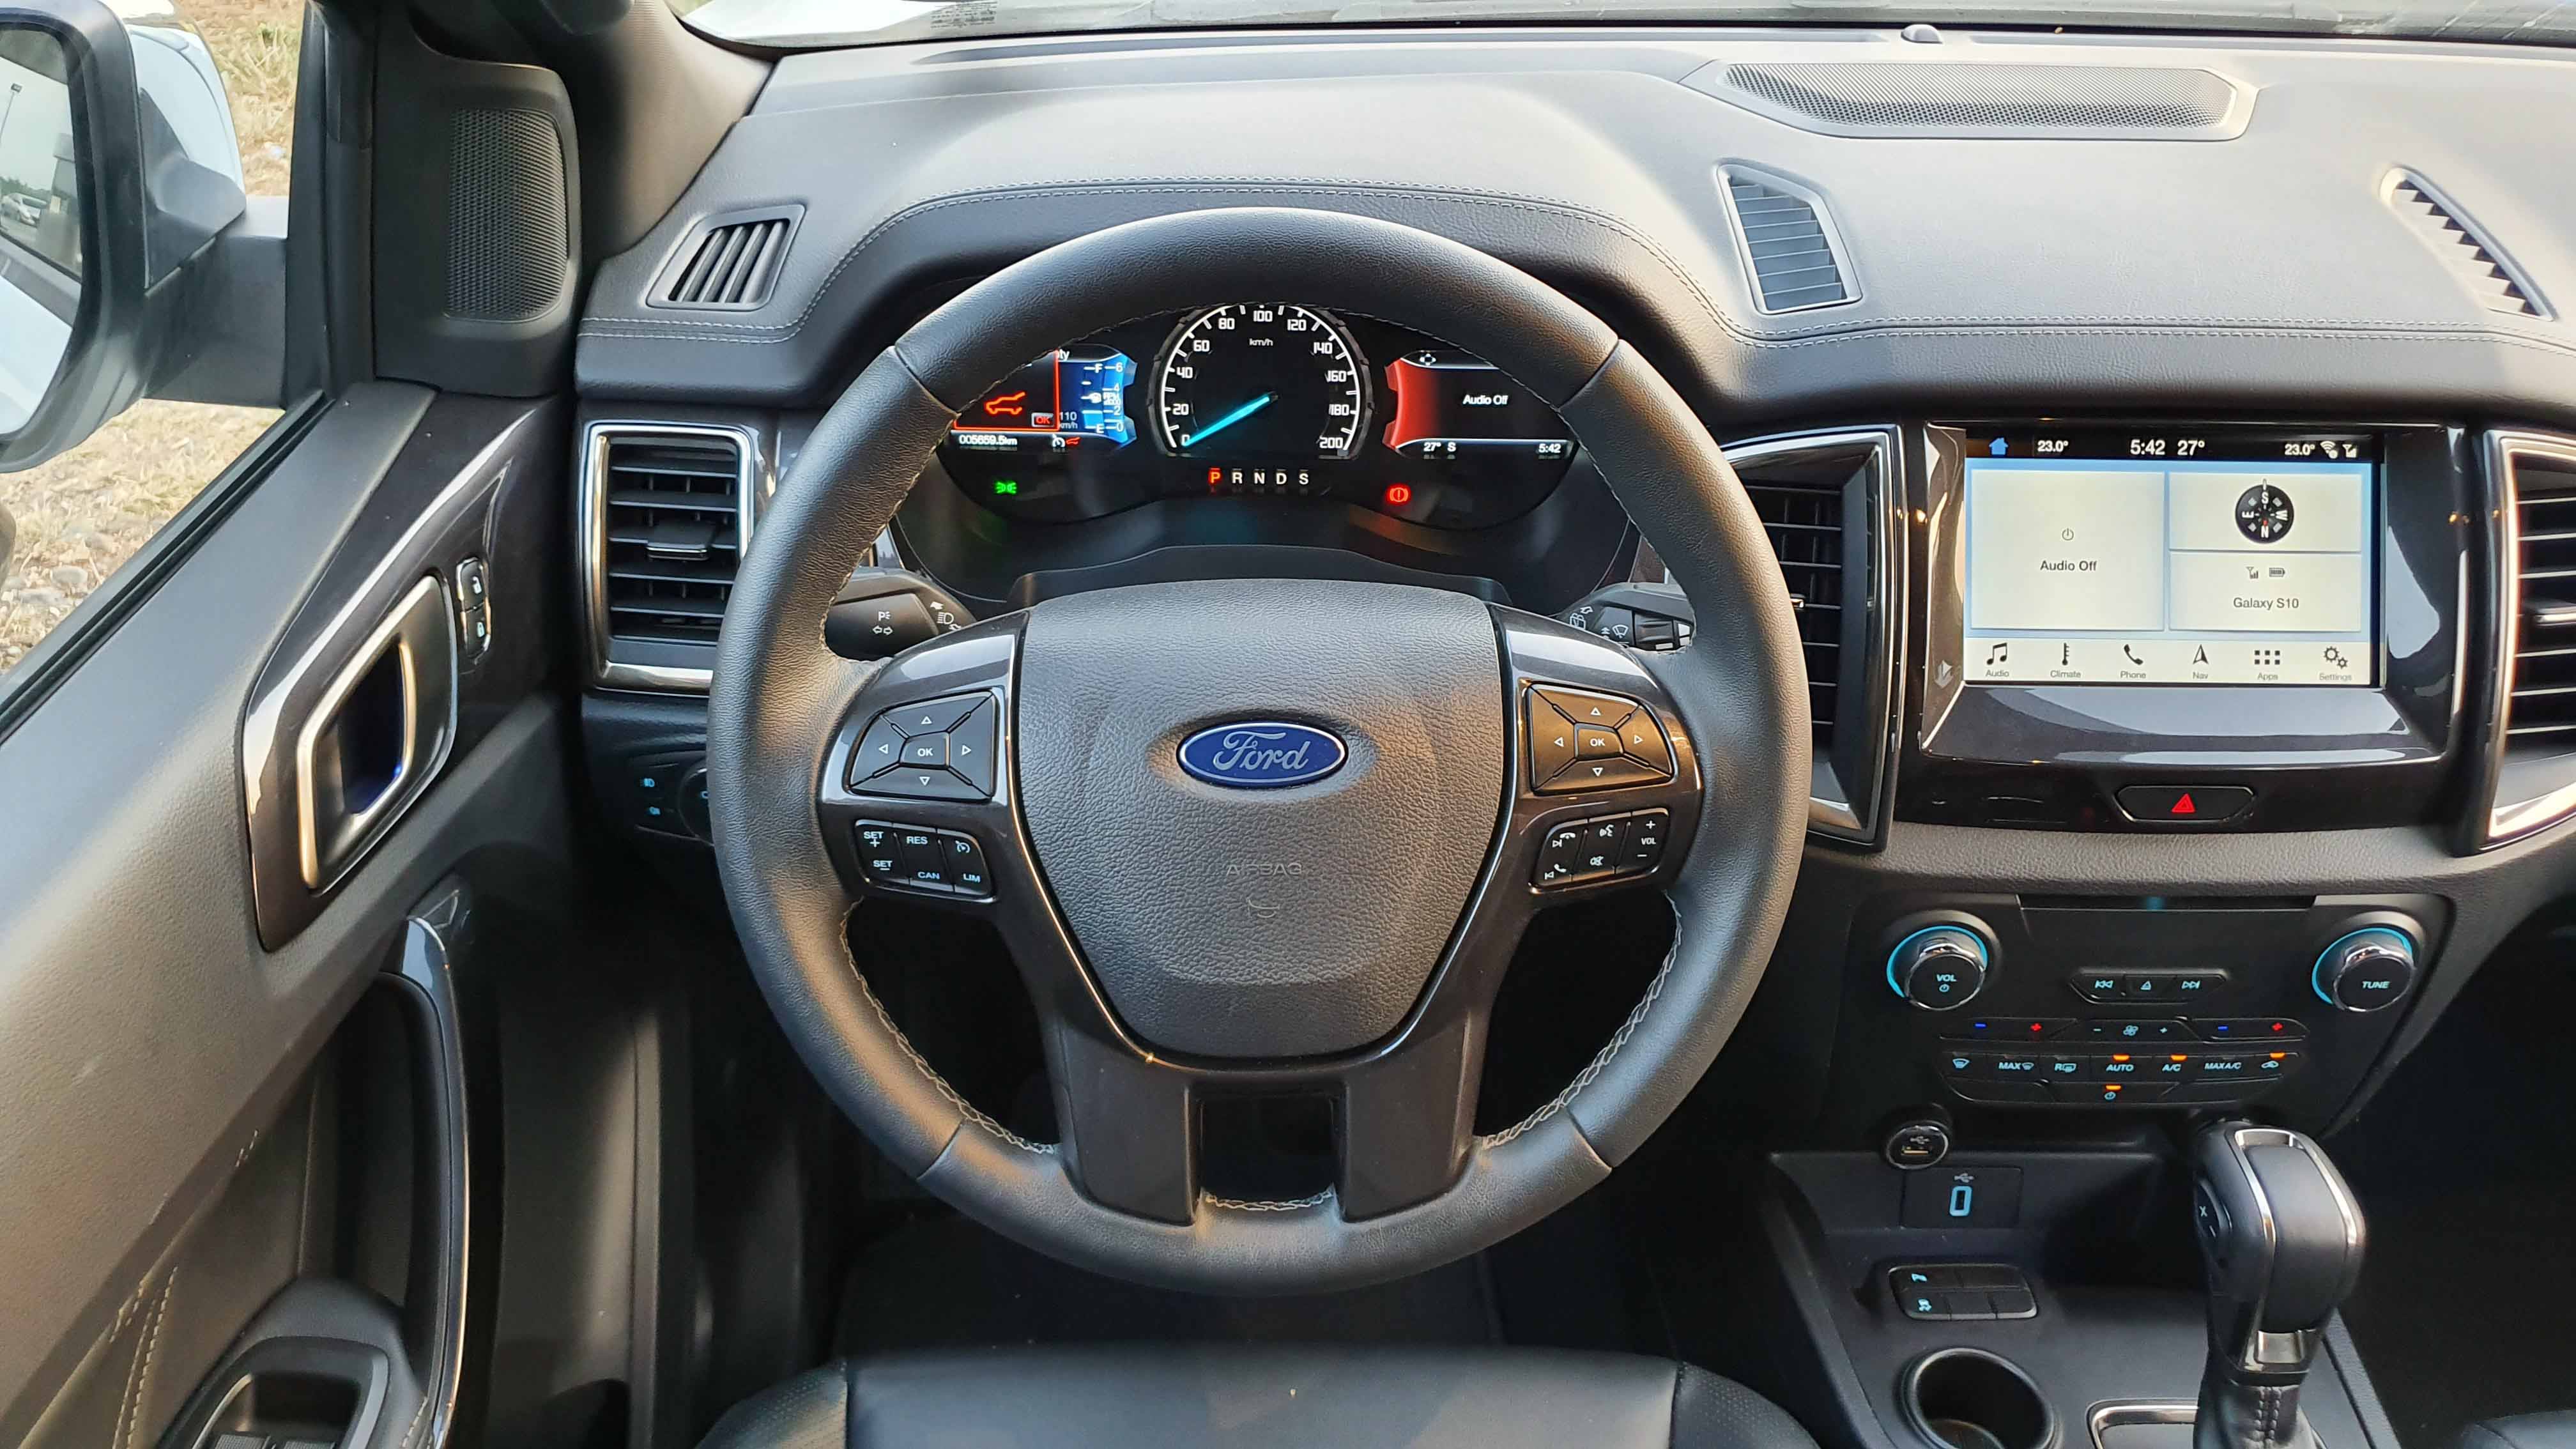 Ford Everest steering wheel